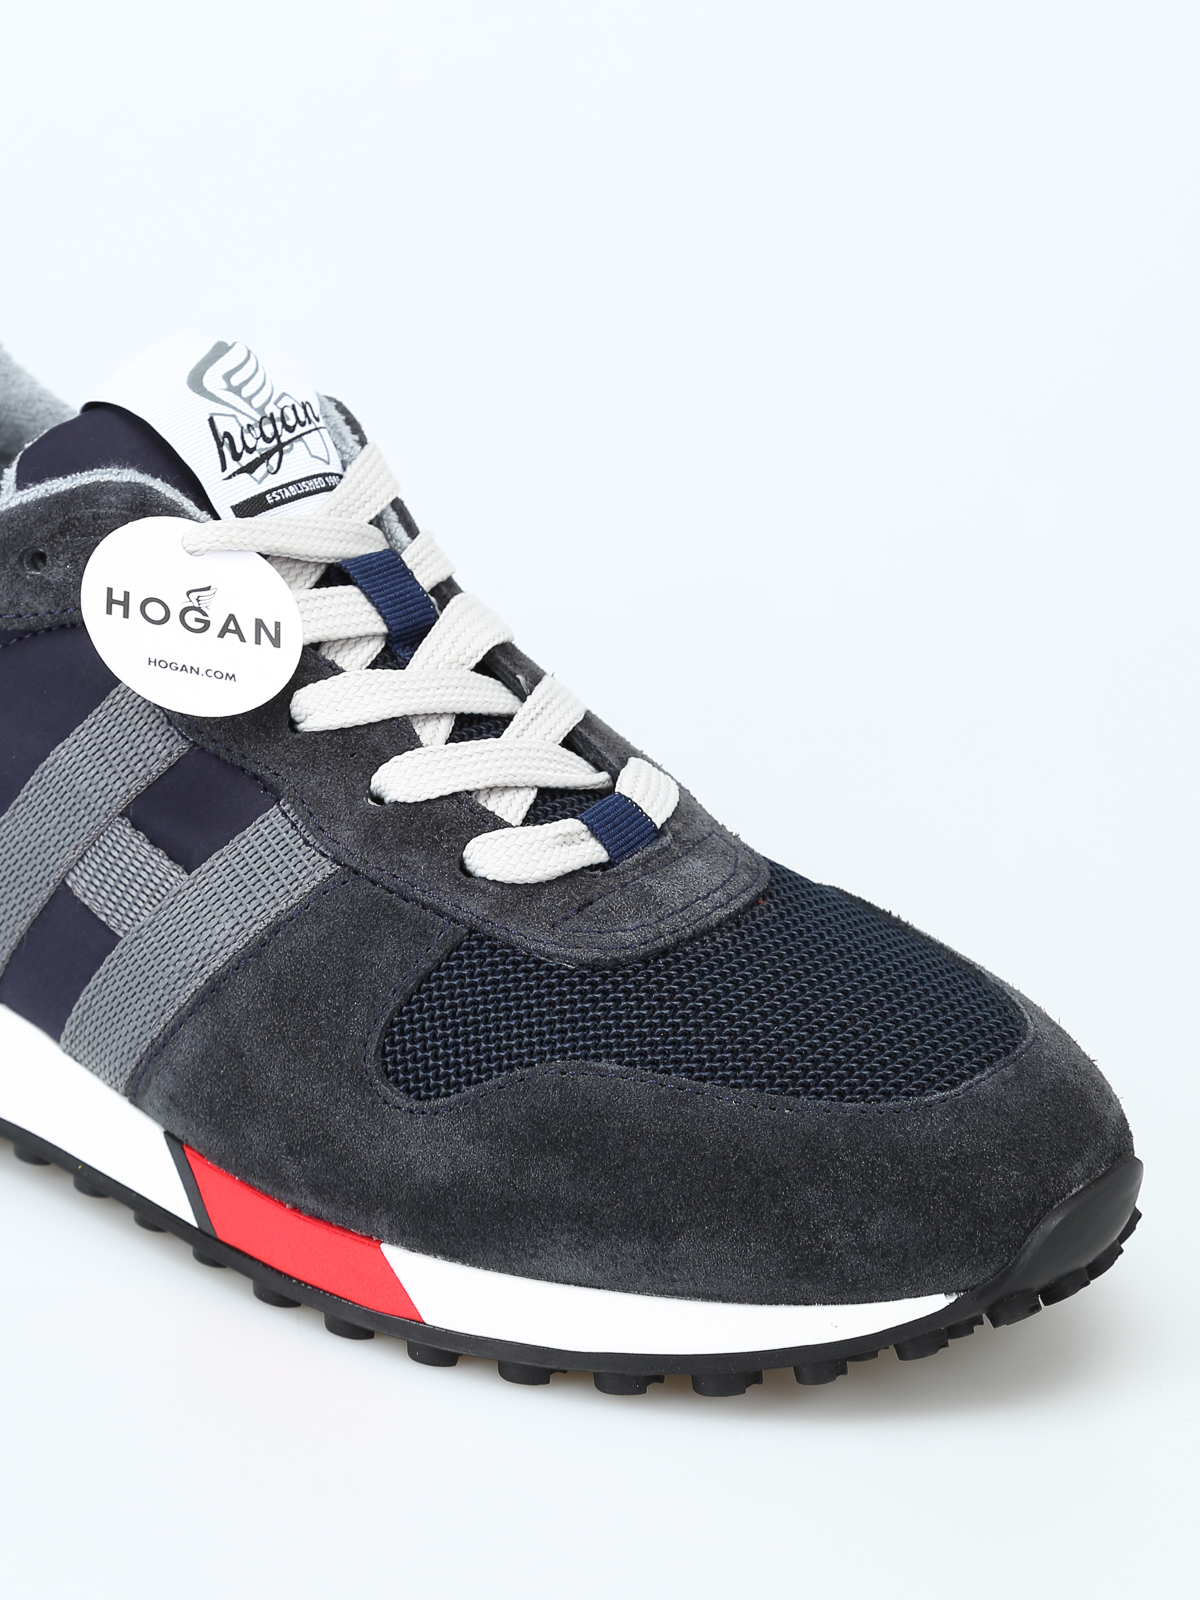 hogan sneakers h383